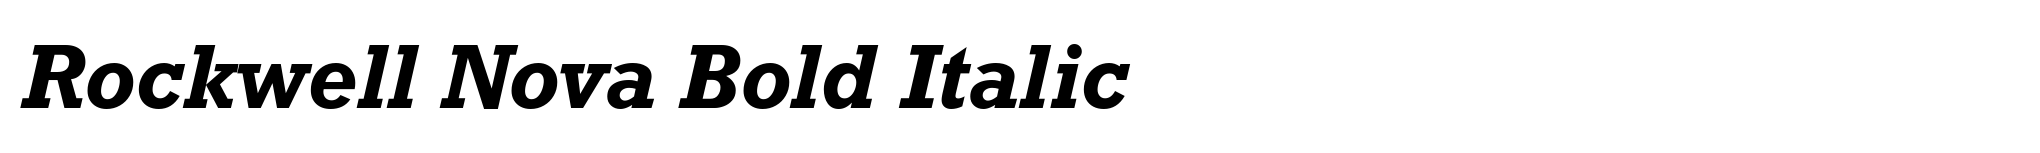 Rockwell Nova Bold Italic image